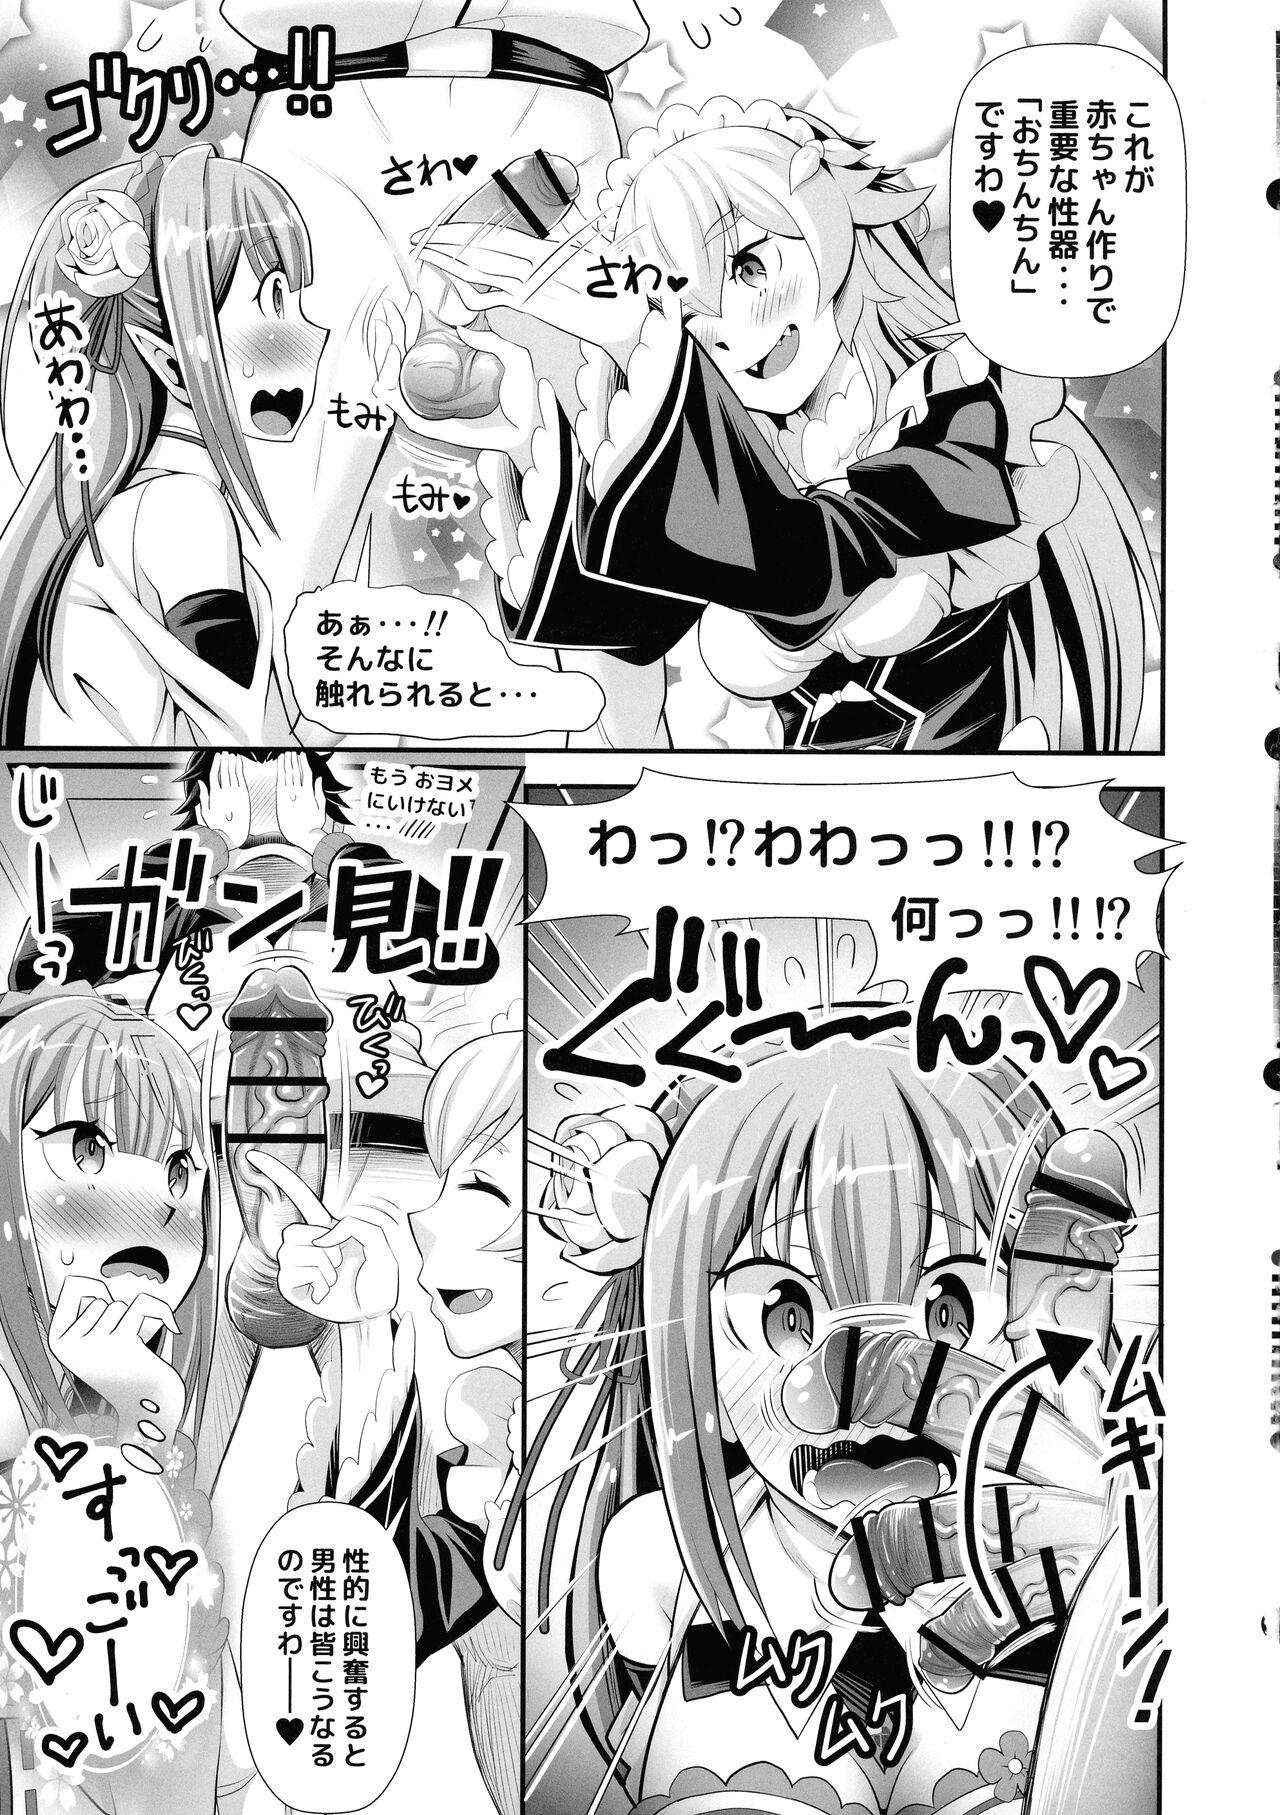 Boy Fuck Girl Re: Zero na Maid-san vol. 3 - Re zero kara hajimeru isekai seikatsu Concha - Page 7